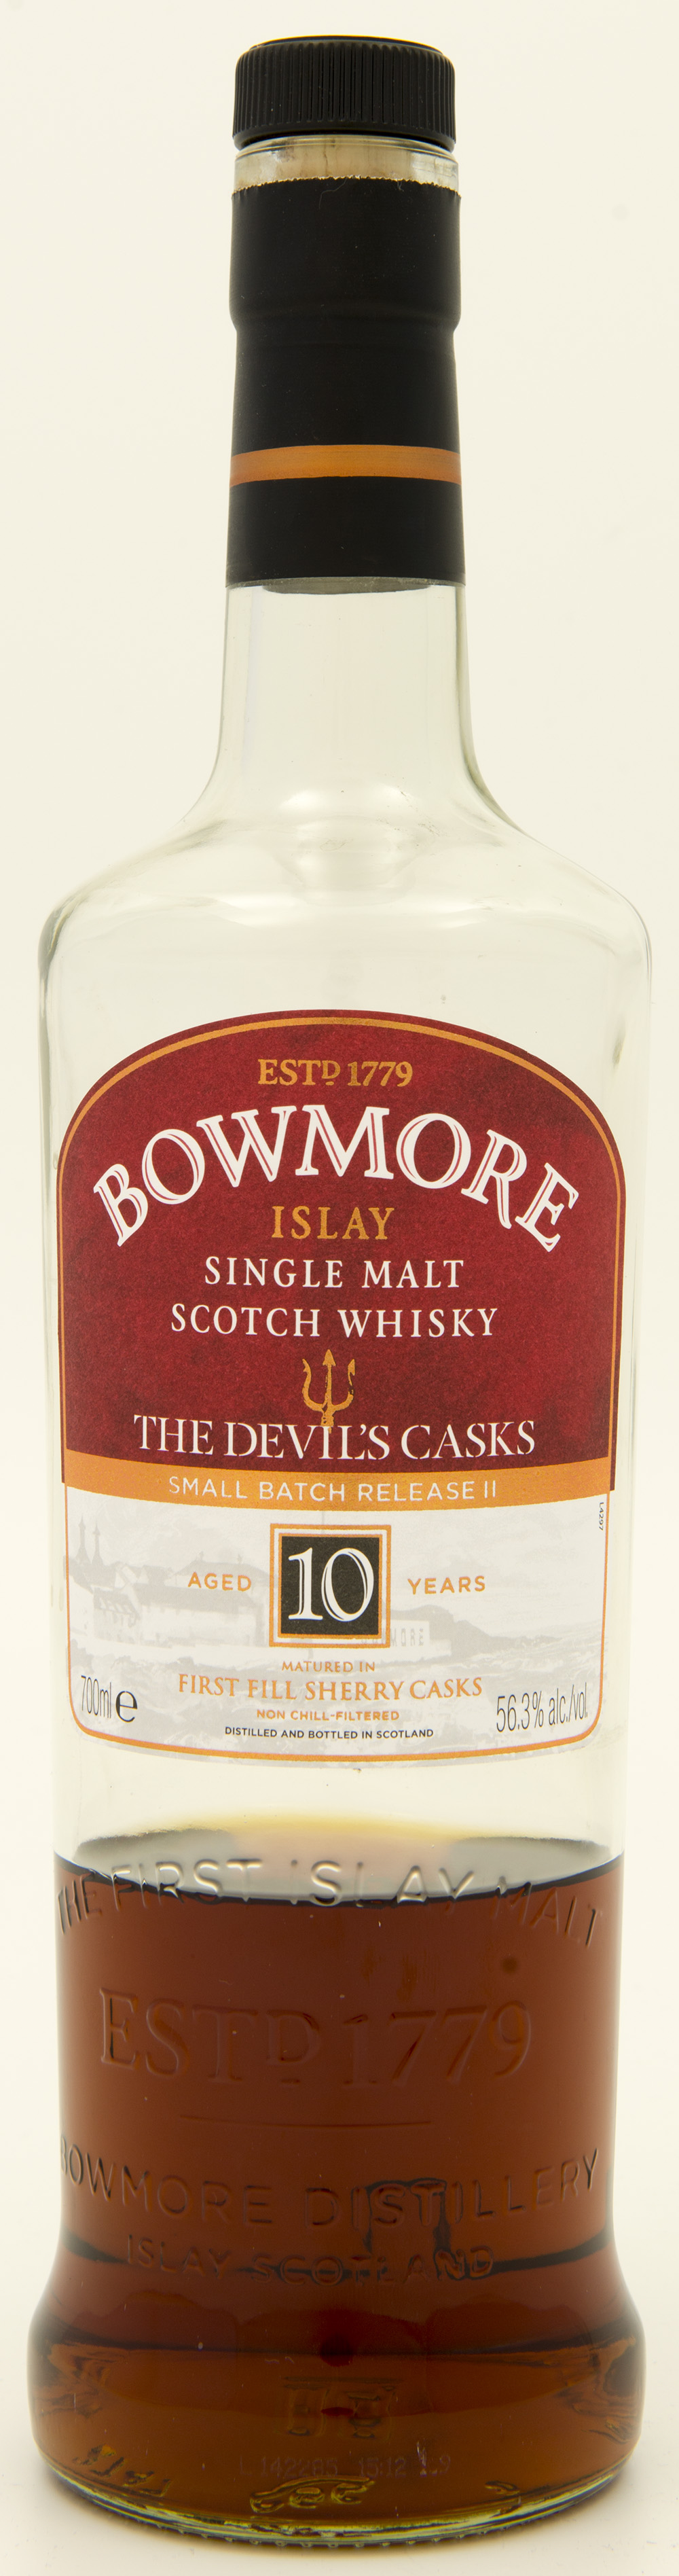 Billede: DSC_8155 - Bowmore Devils Cask Release II - bottle front.jpg